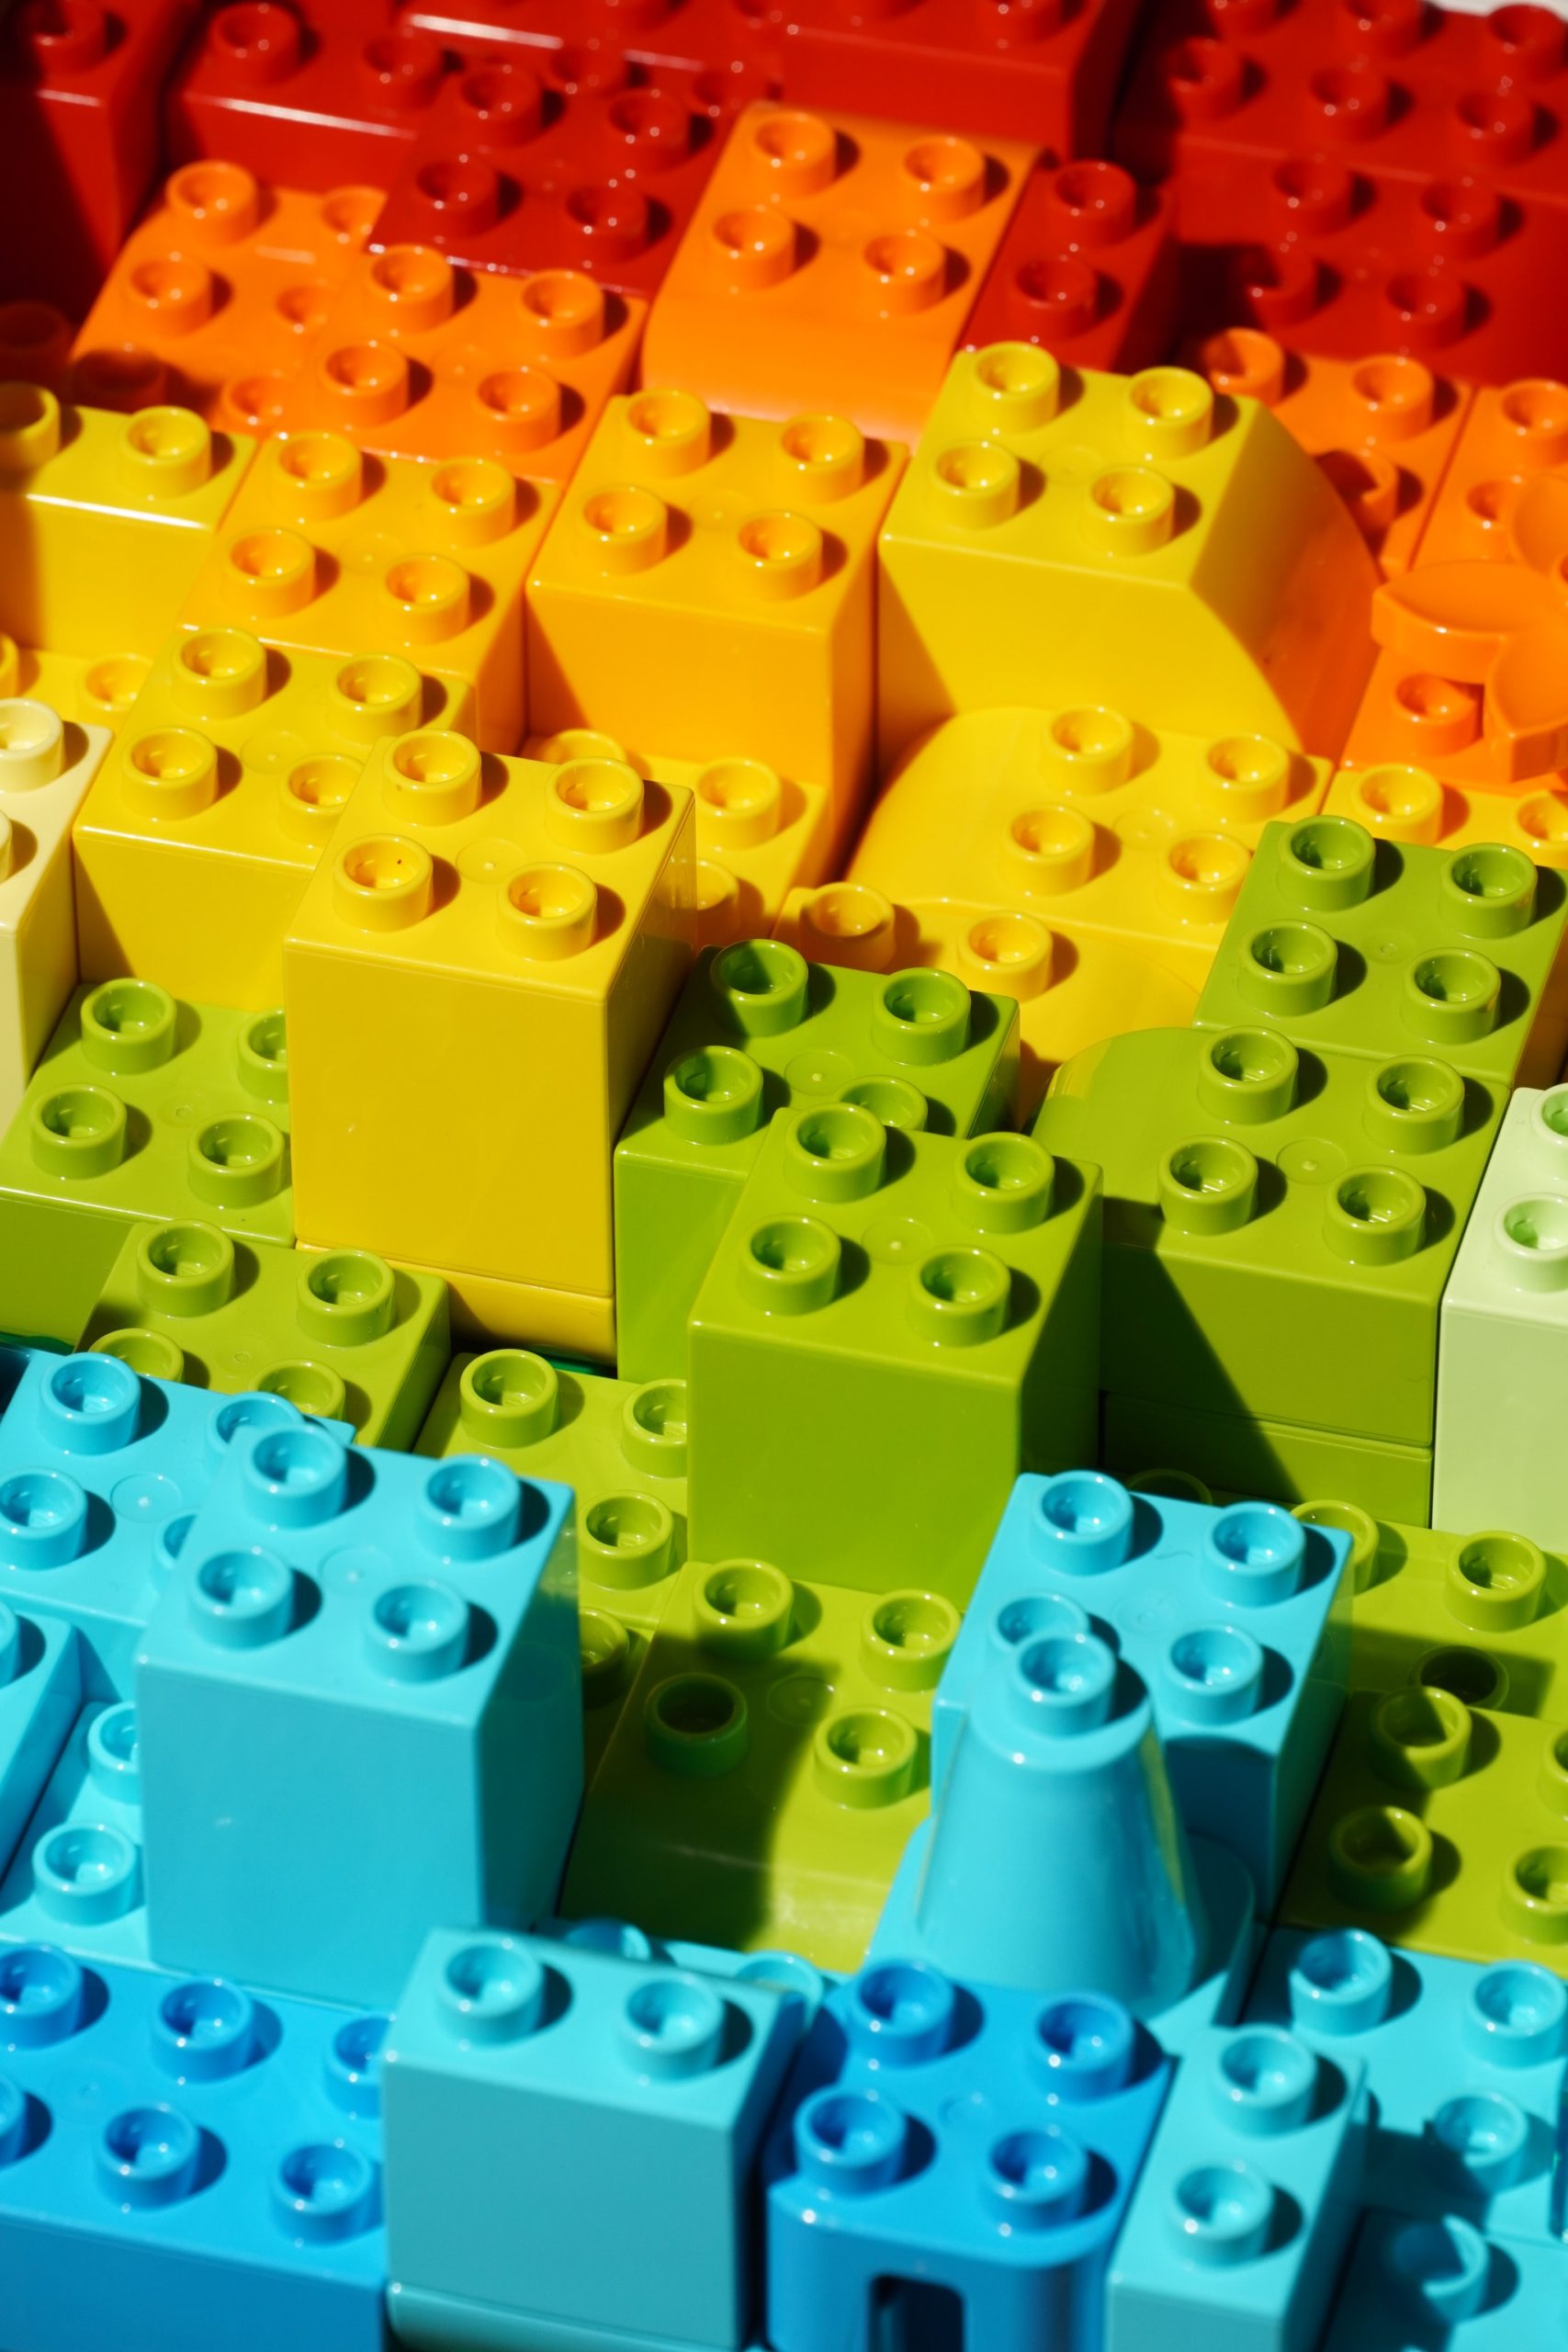 lego blocks wallpaper